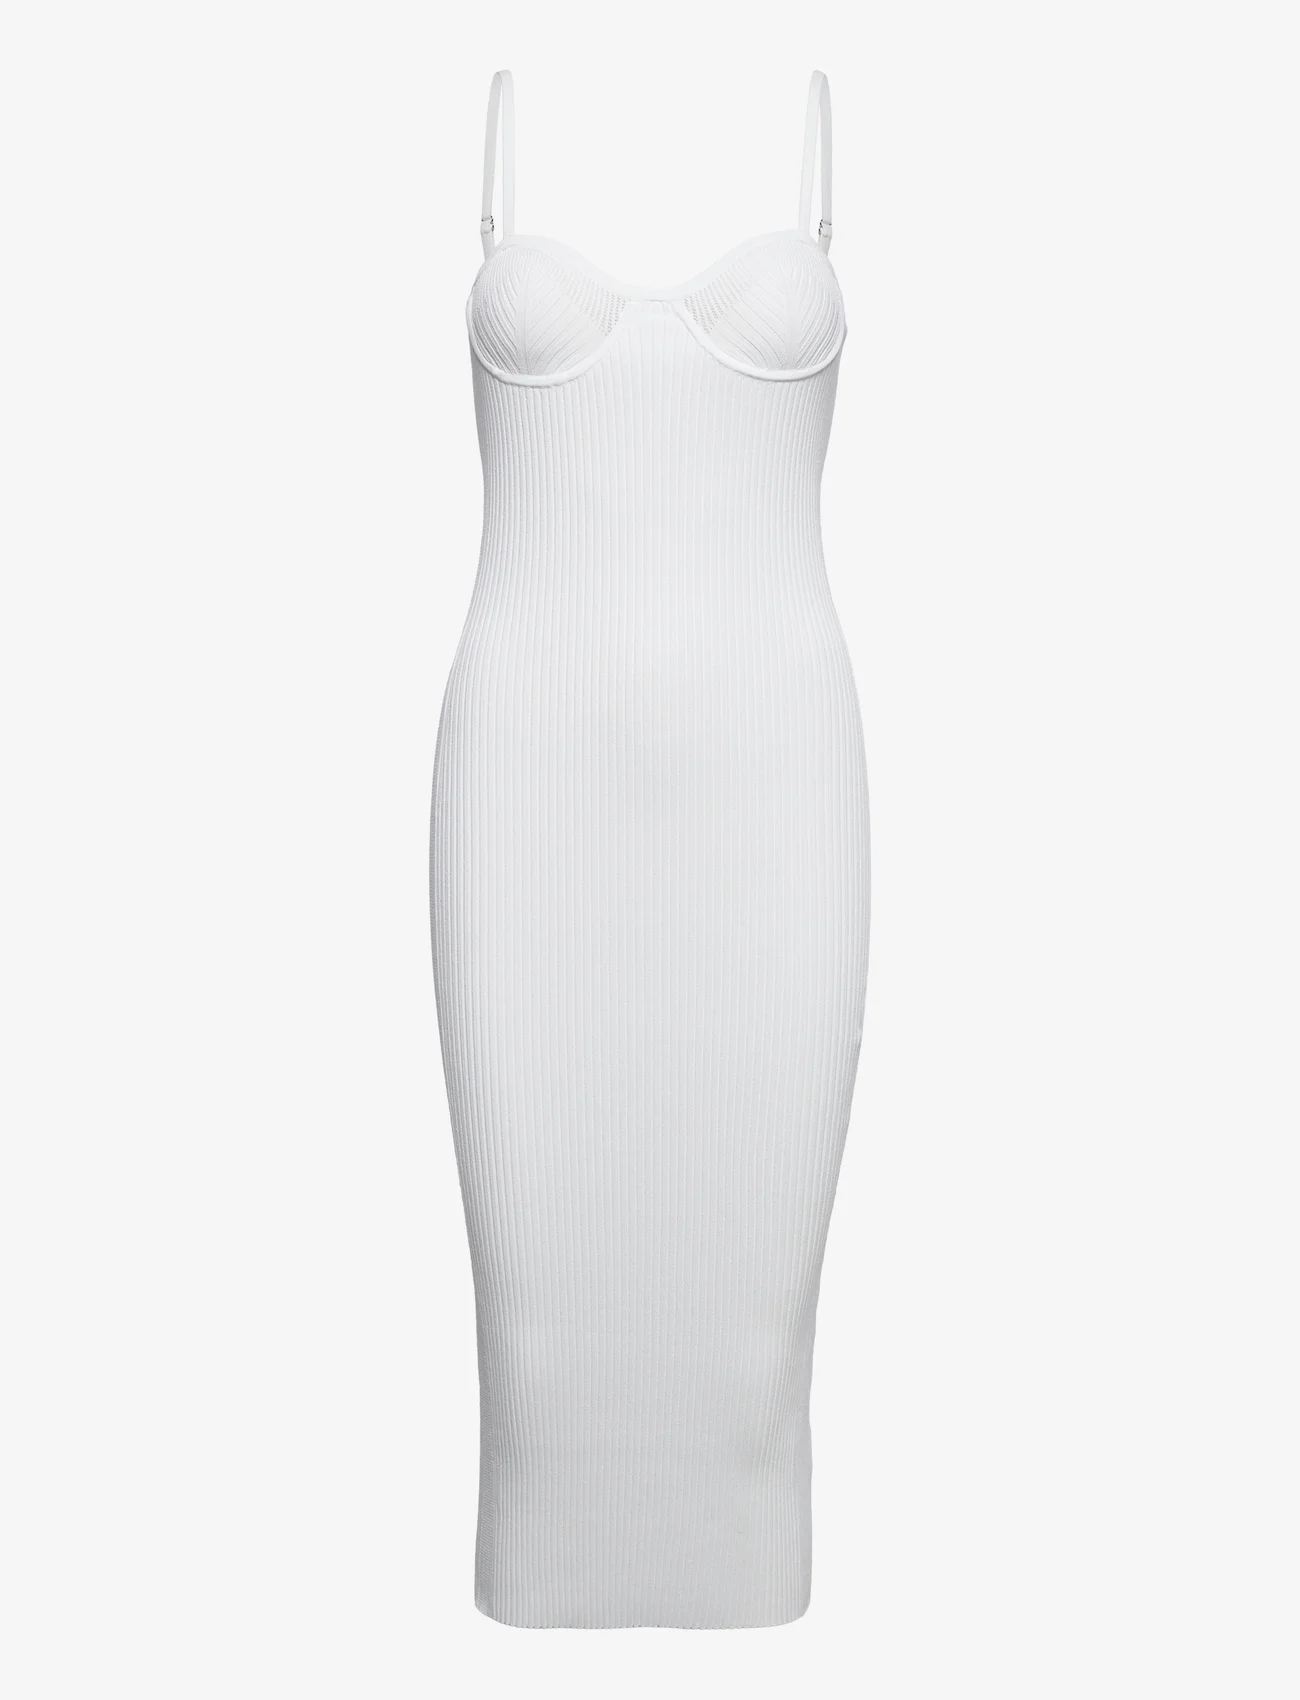 Helmut Lang - EYELET BRA DRESS.WAR - etuikleider - white/white - 0